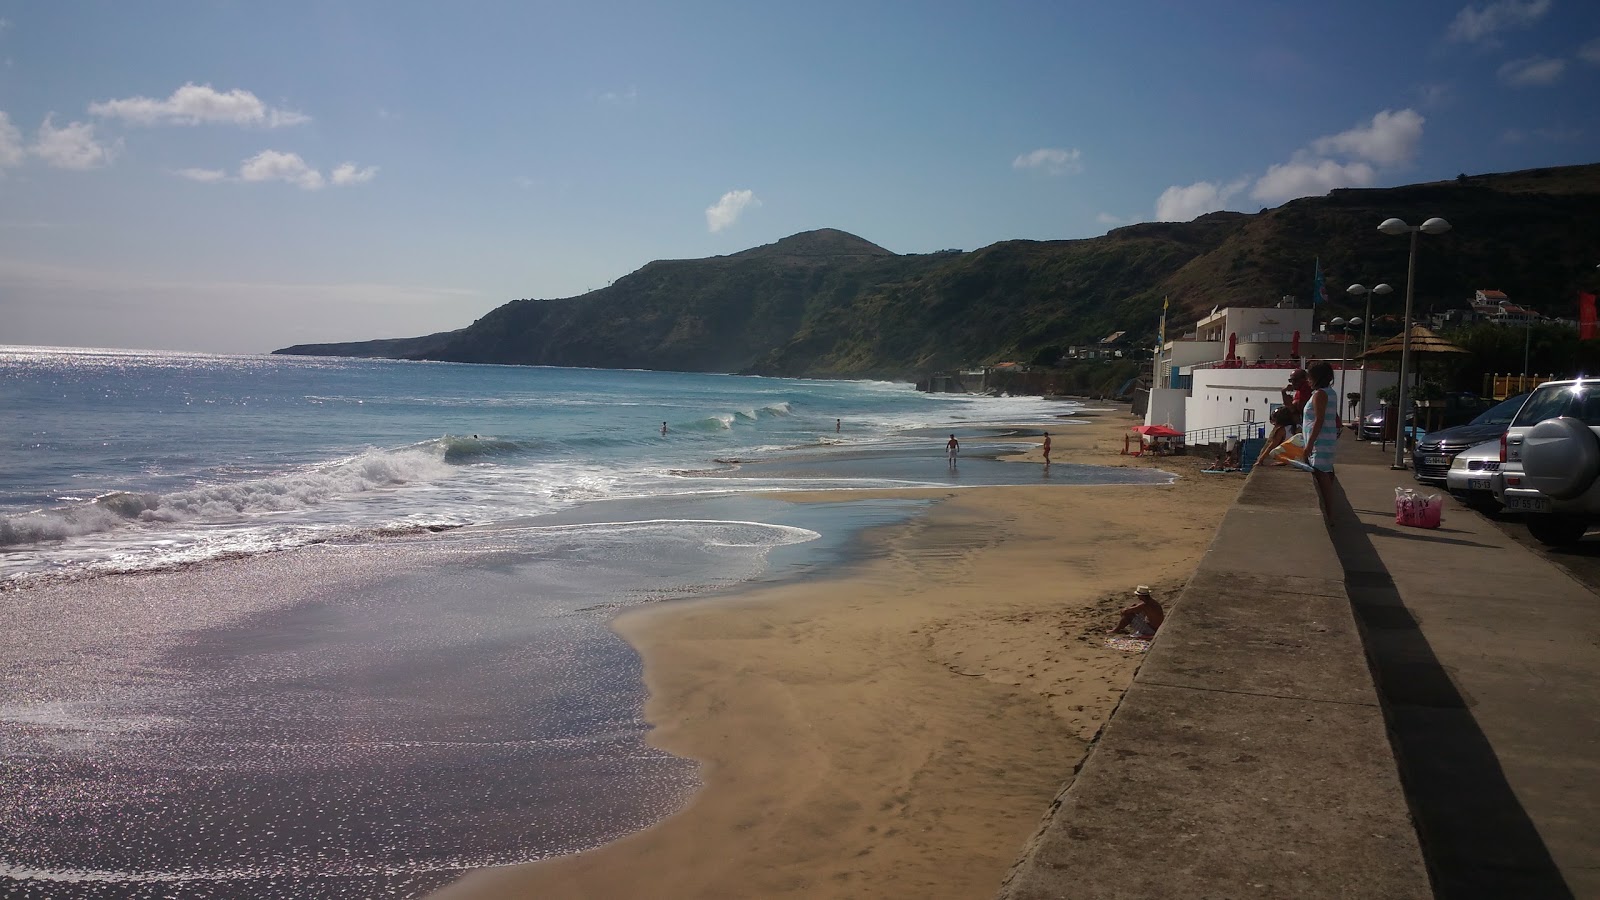 Praia Formosa的照片 具有非常干净级别的清洁度